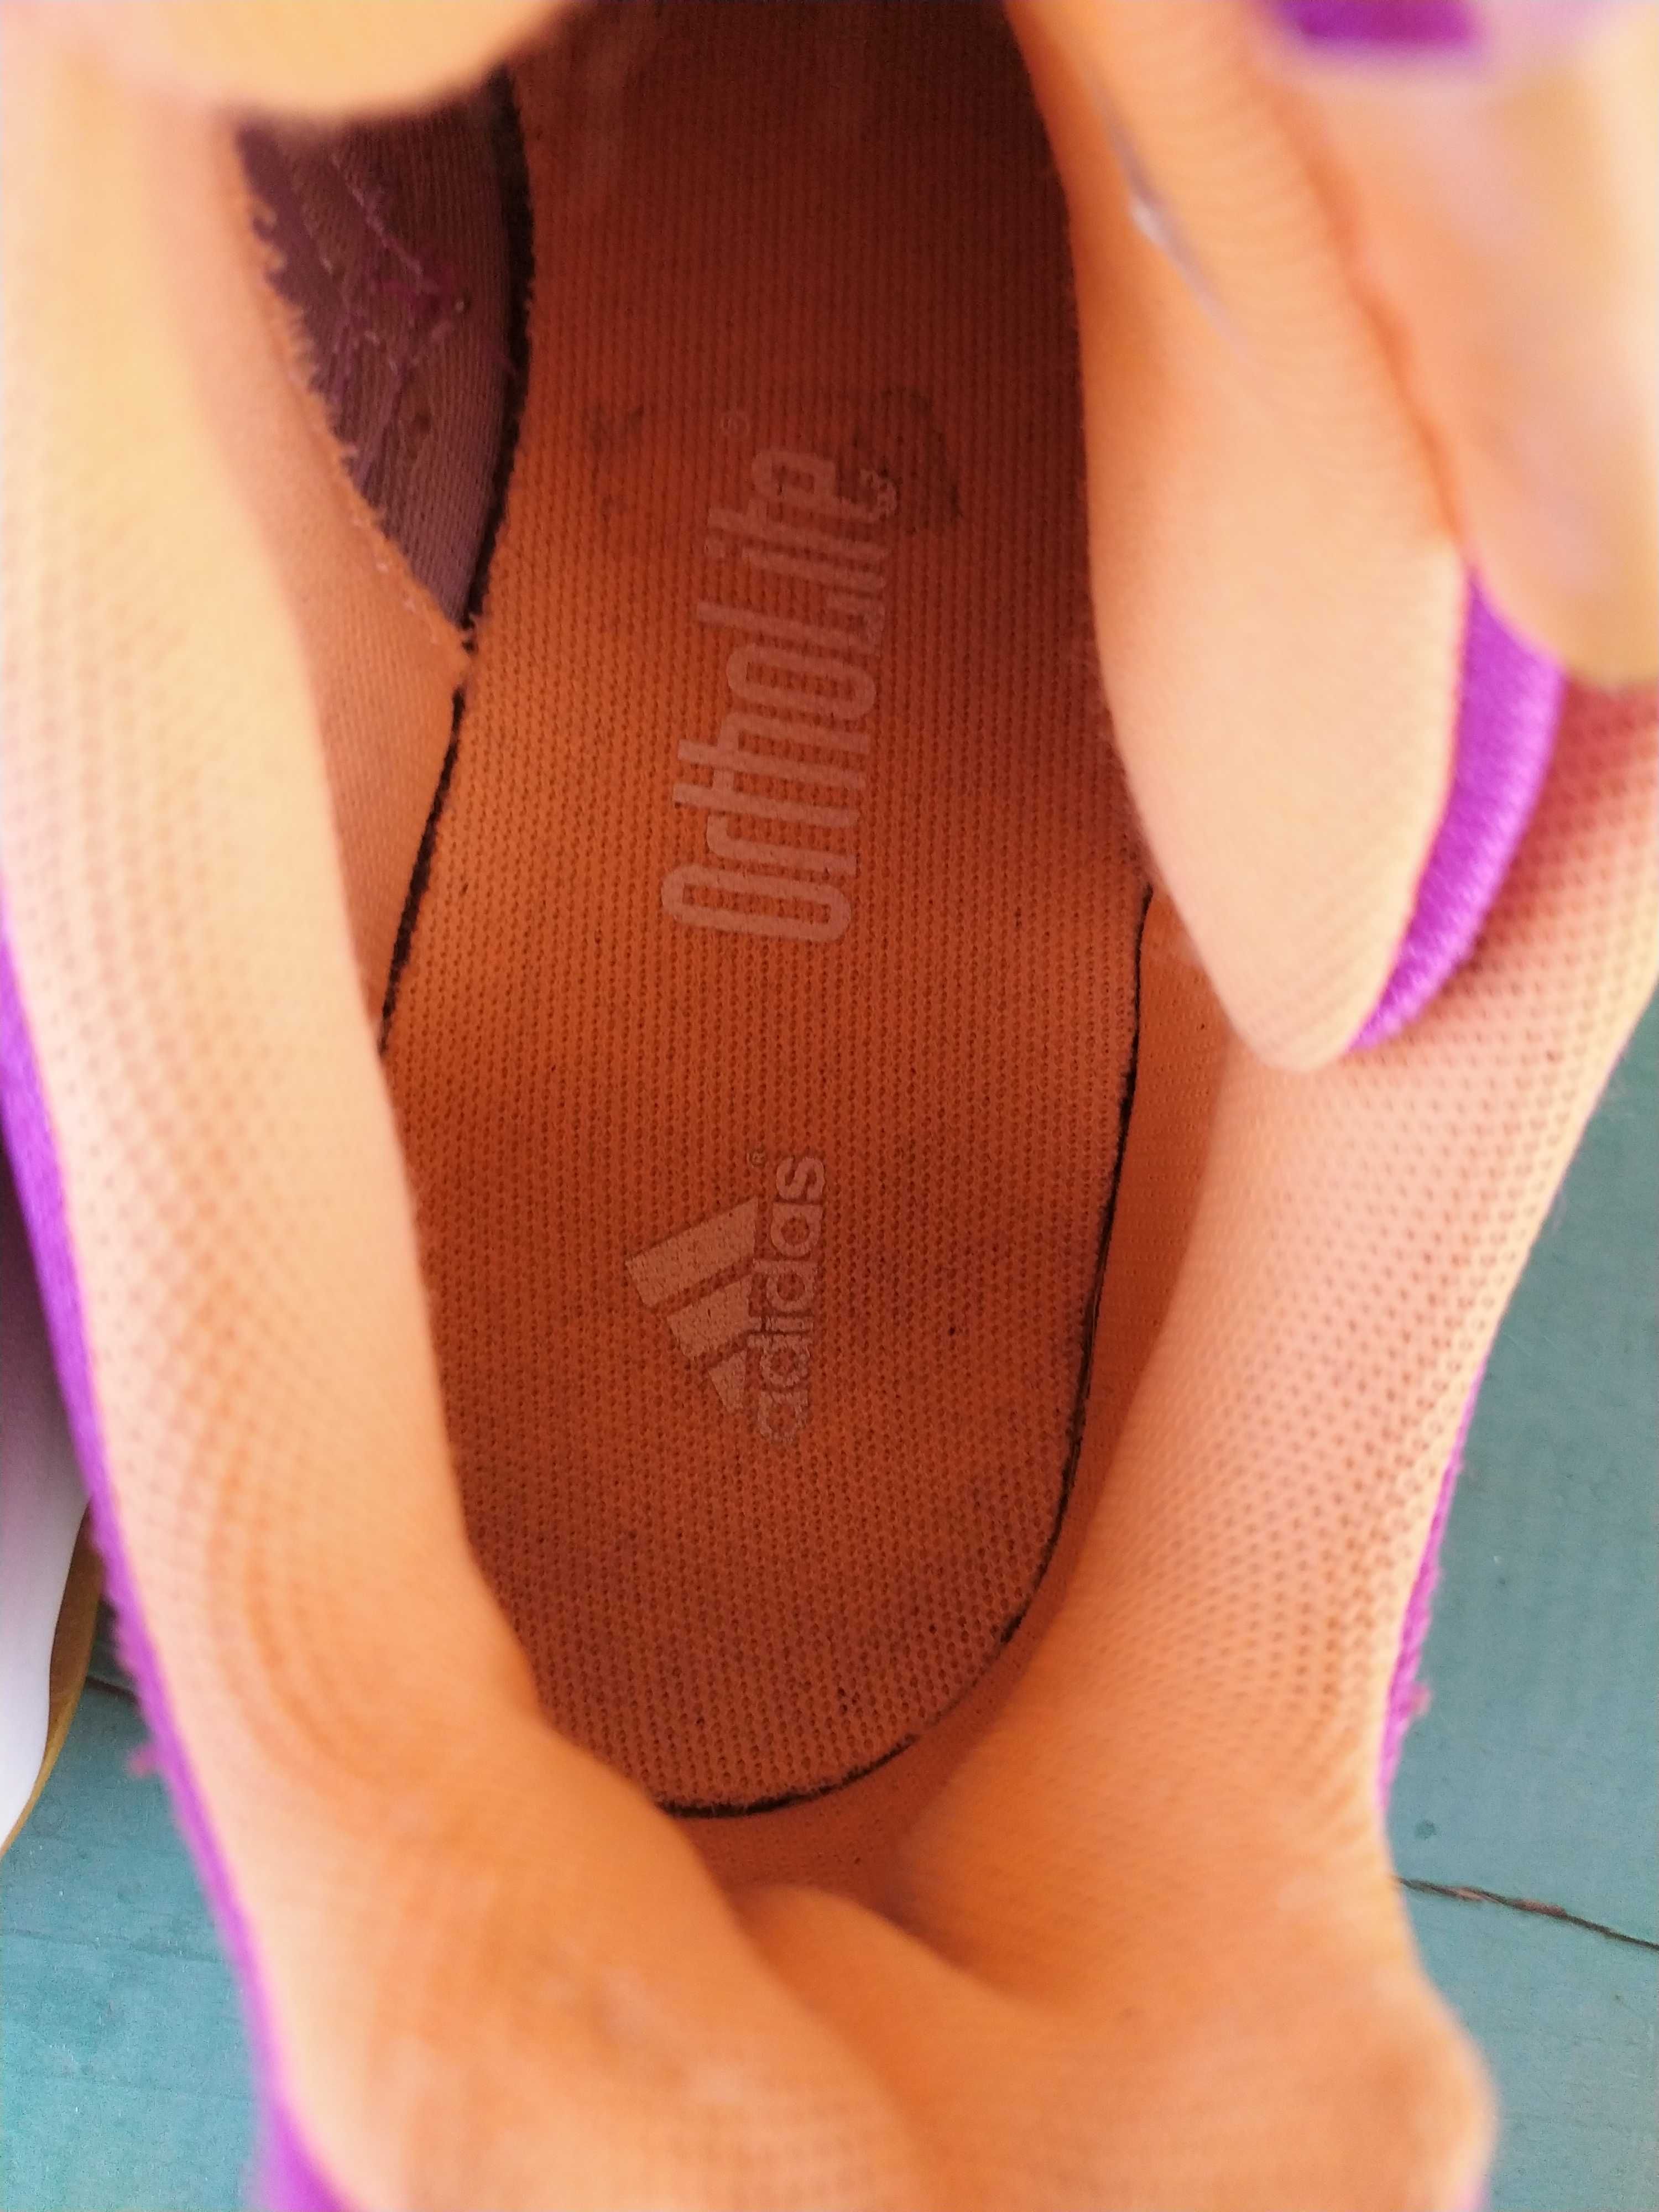 Кросівки жіночі Адідас на 38 розмір оригінал